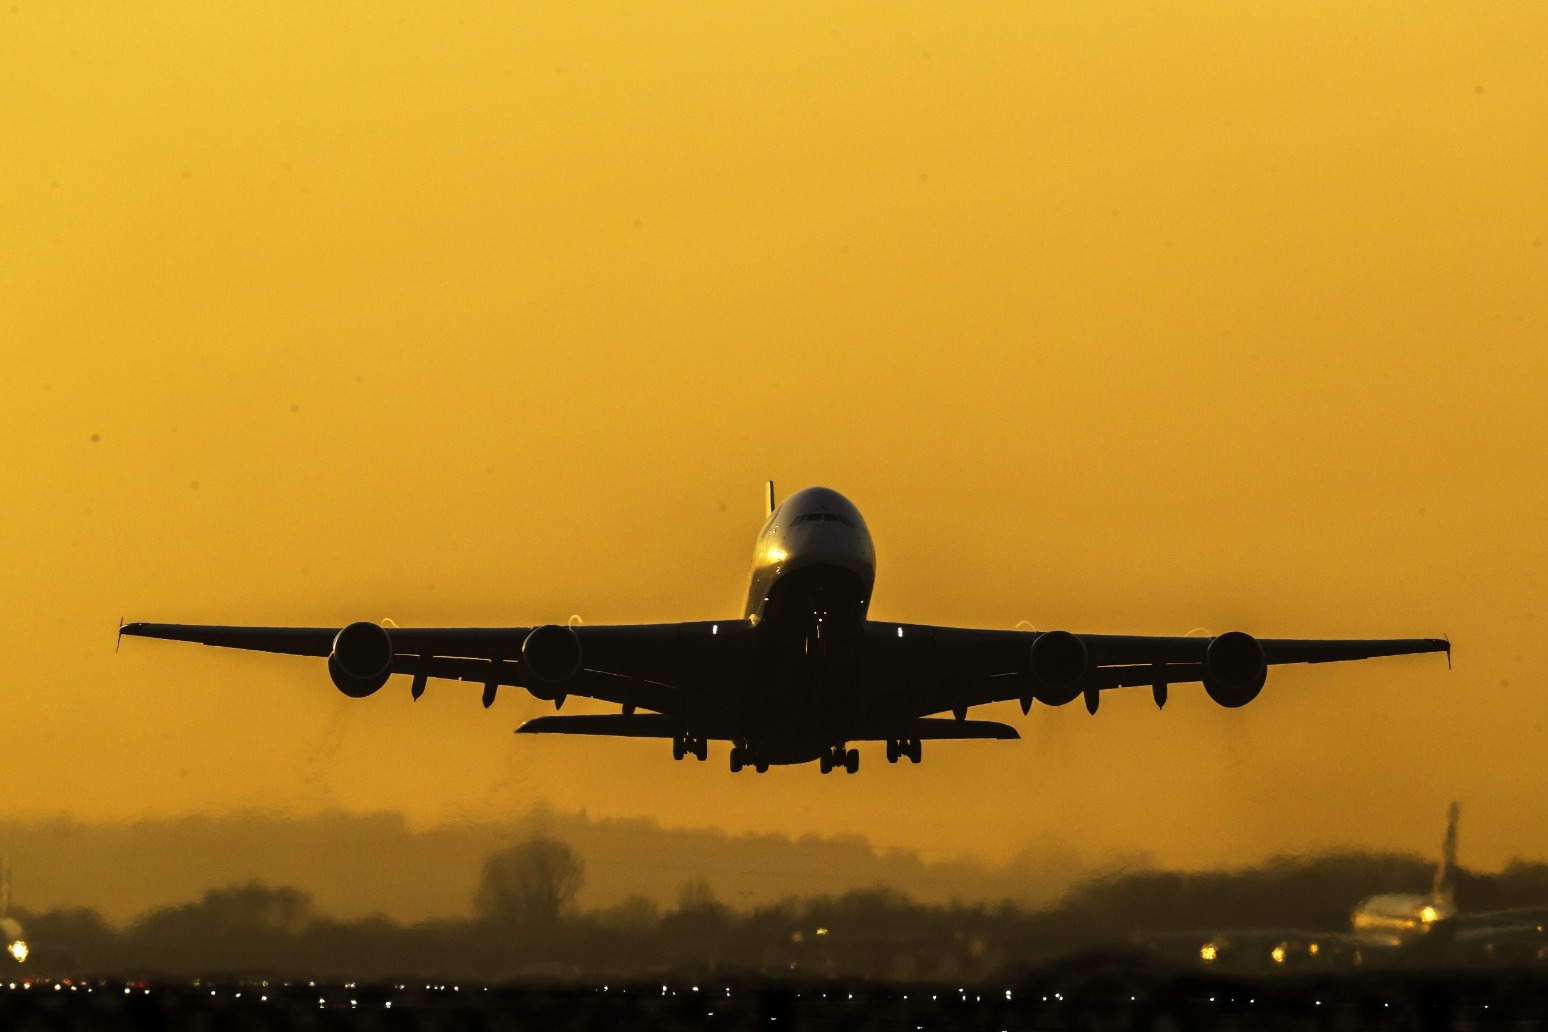 Heathrow regains status as Europe’s busiest hub airport 